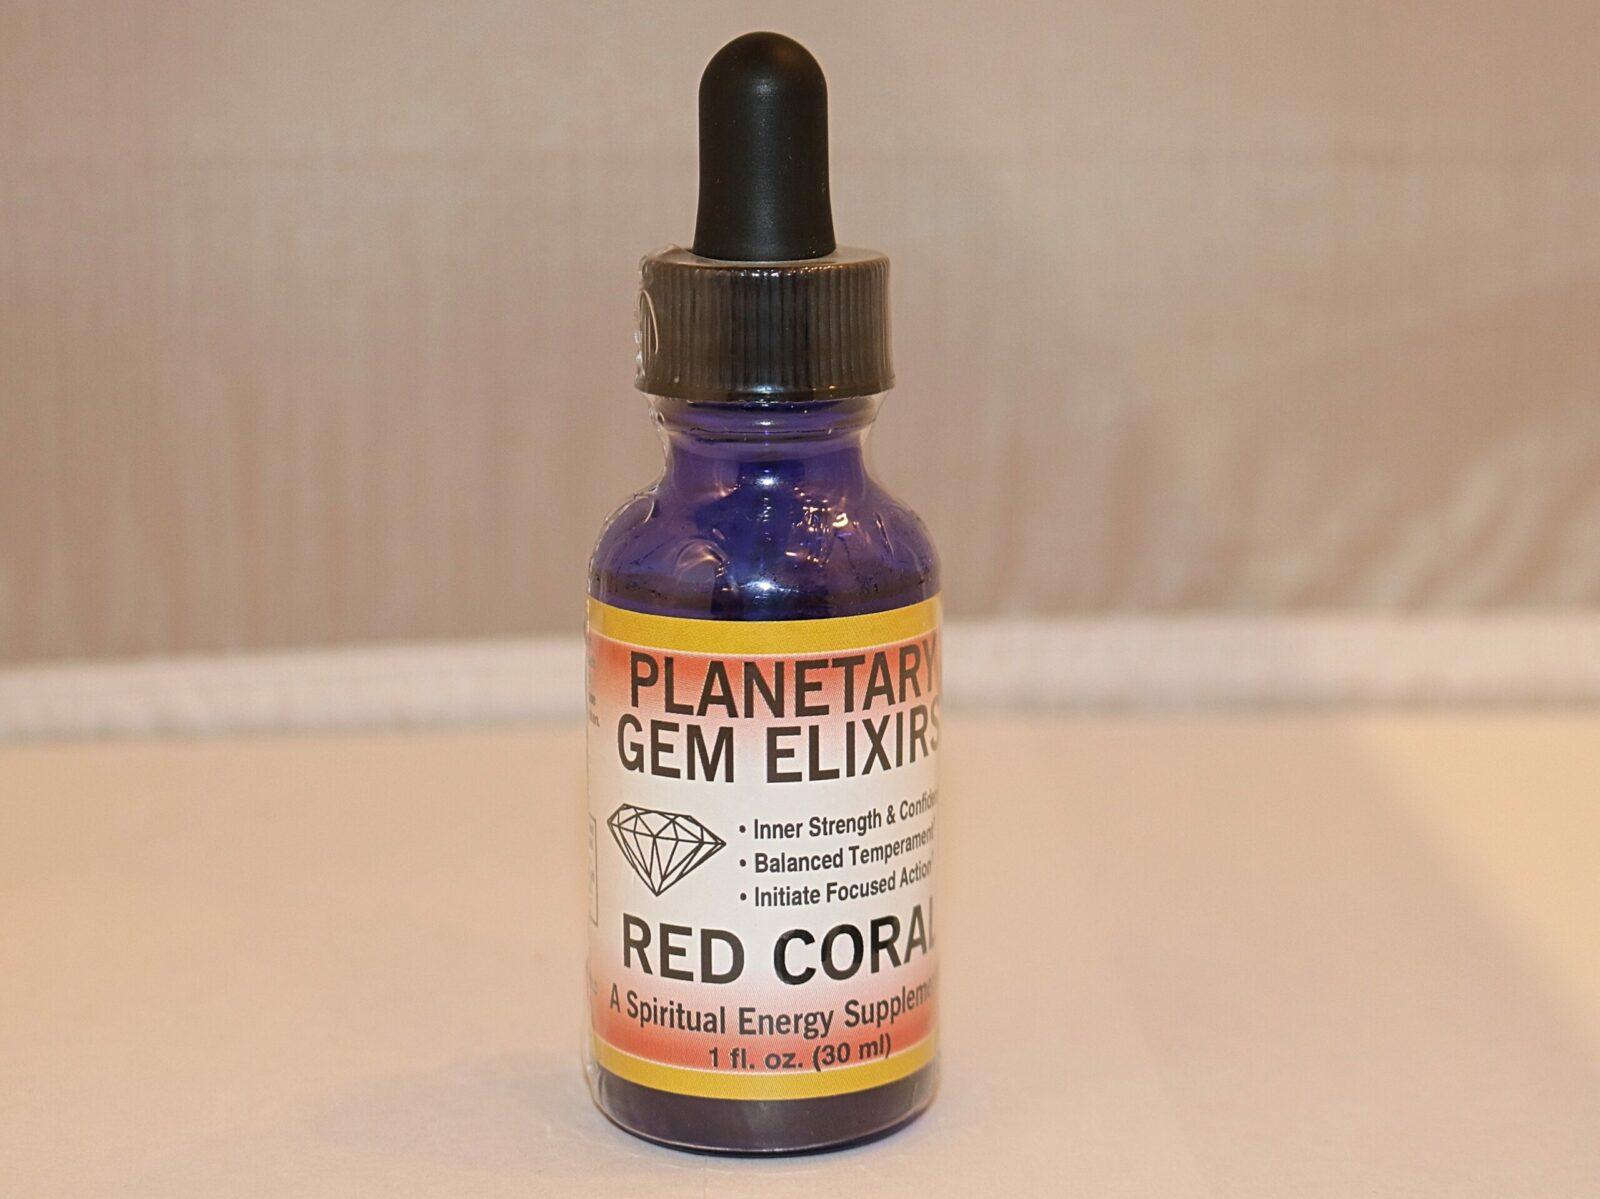 Red Coral Gem Elixir